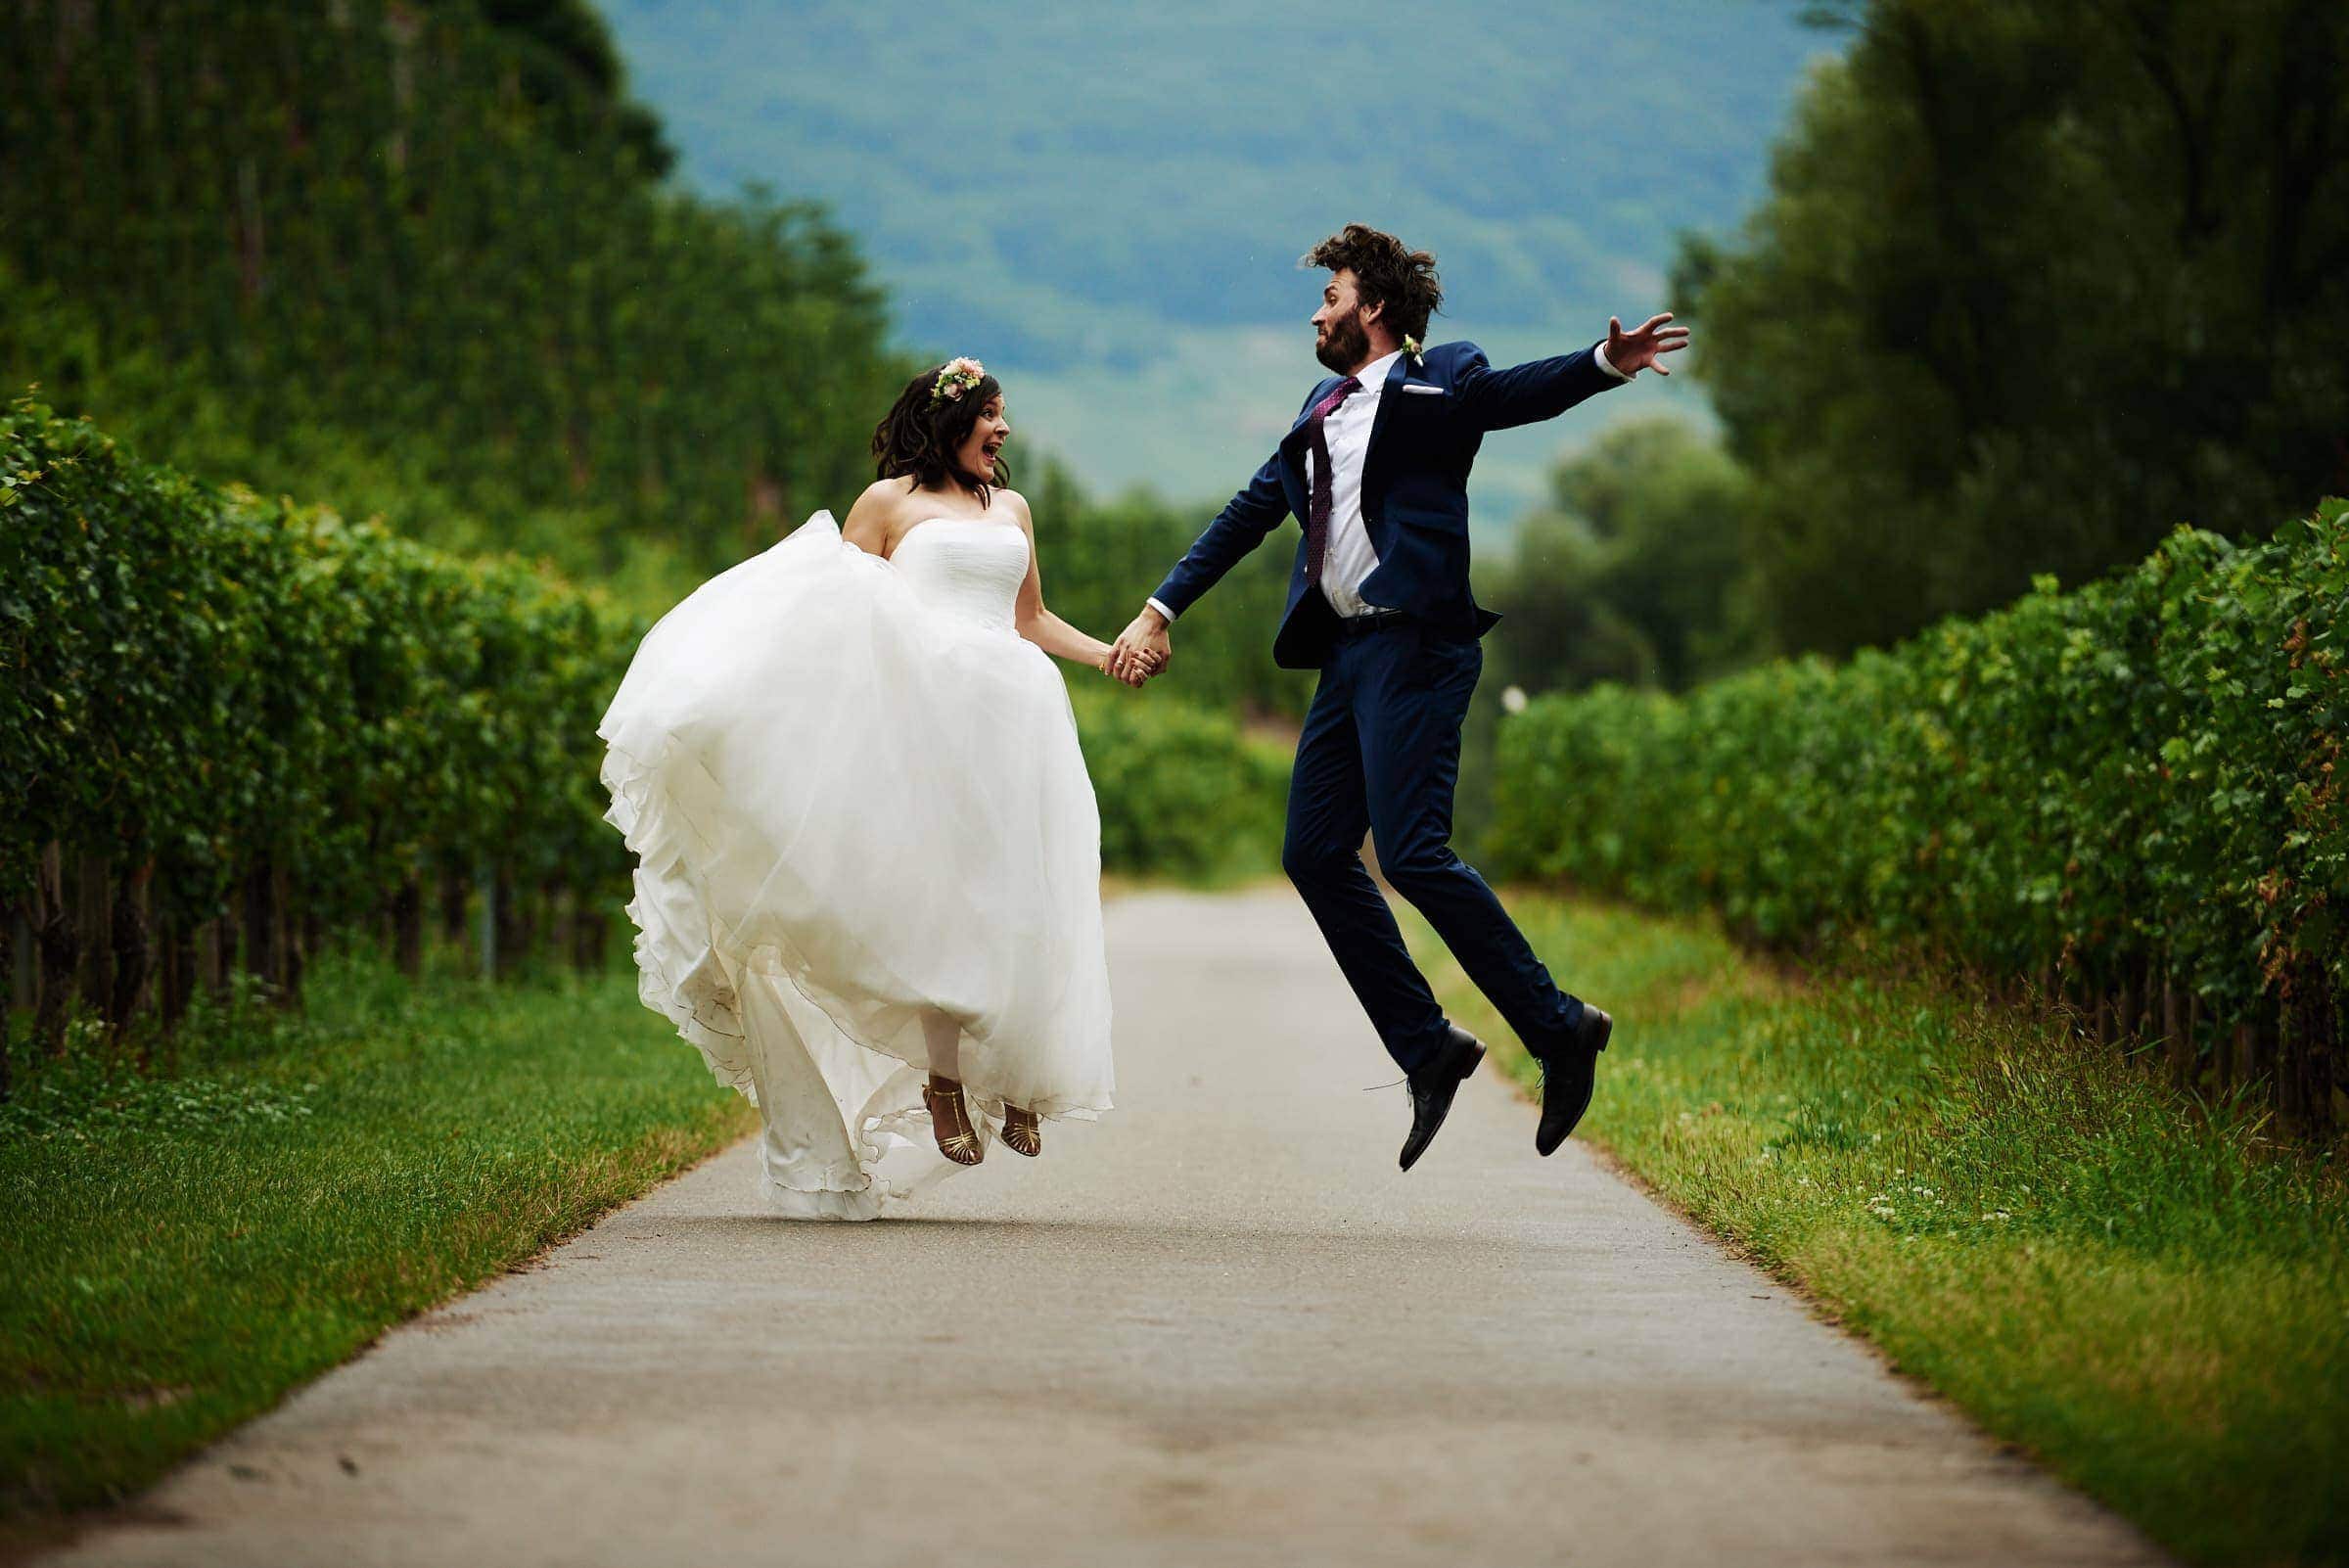 Ein Brautpaar auf einem Landweg zwischen Weinbergen. Sie springen energisch in die Luft und halten dabei ihre Hände.